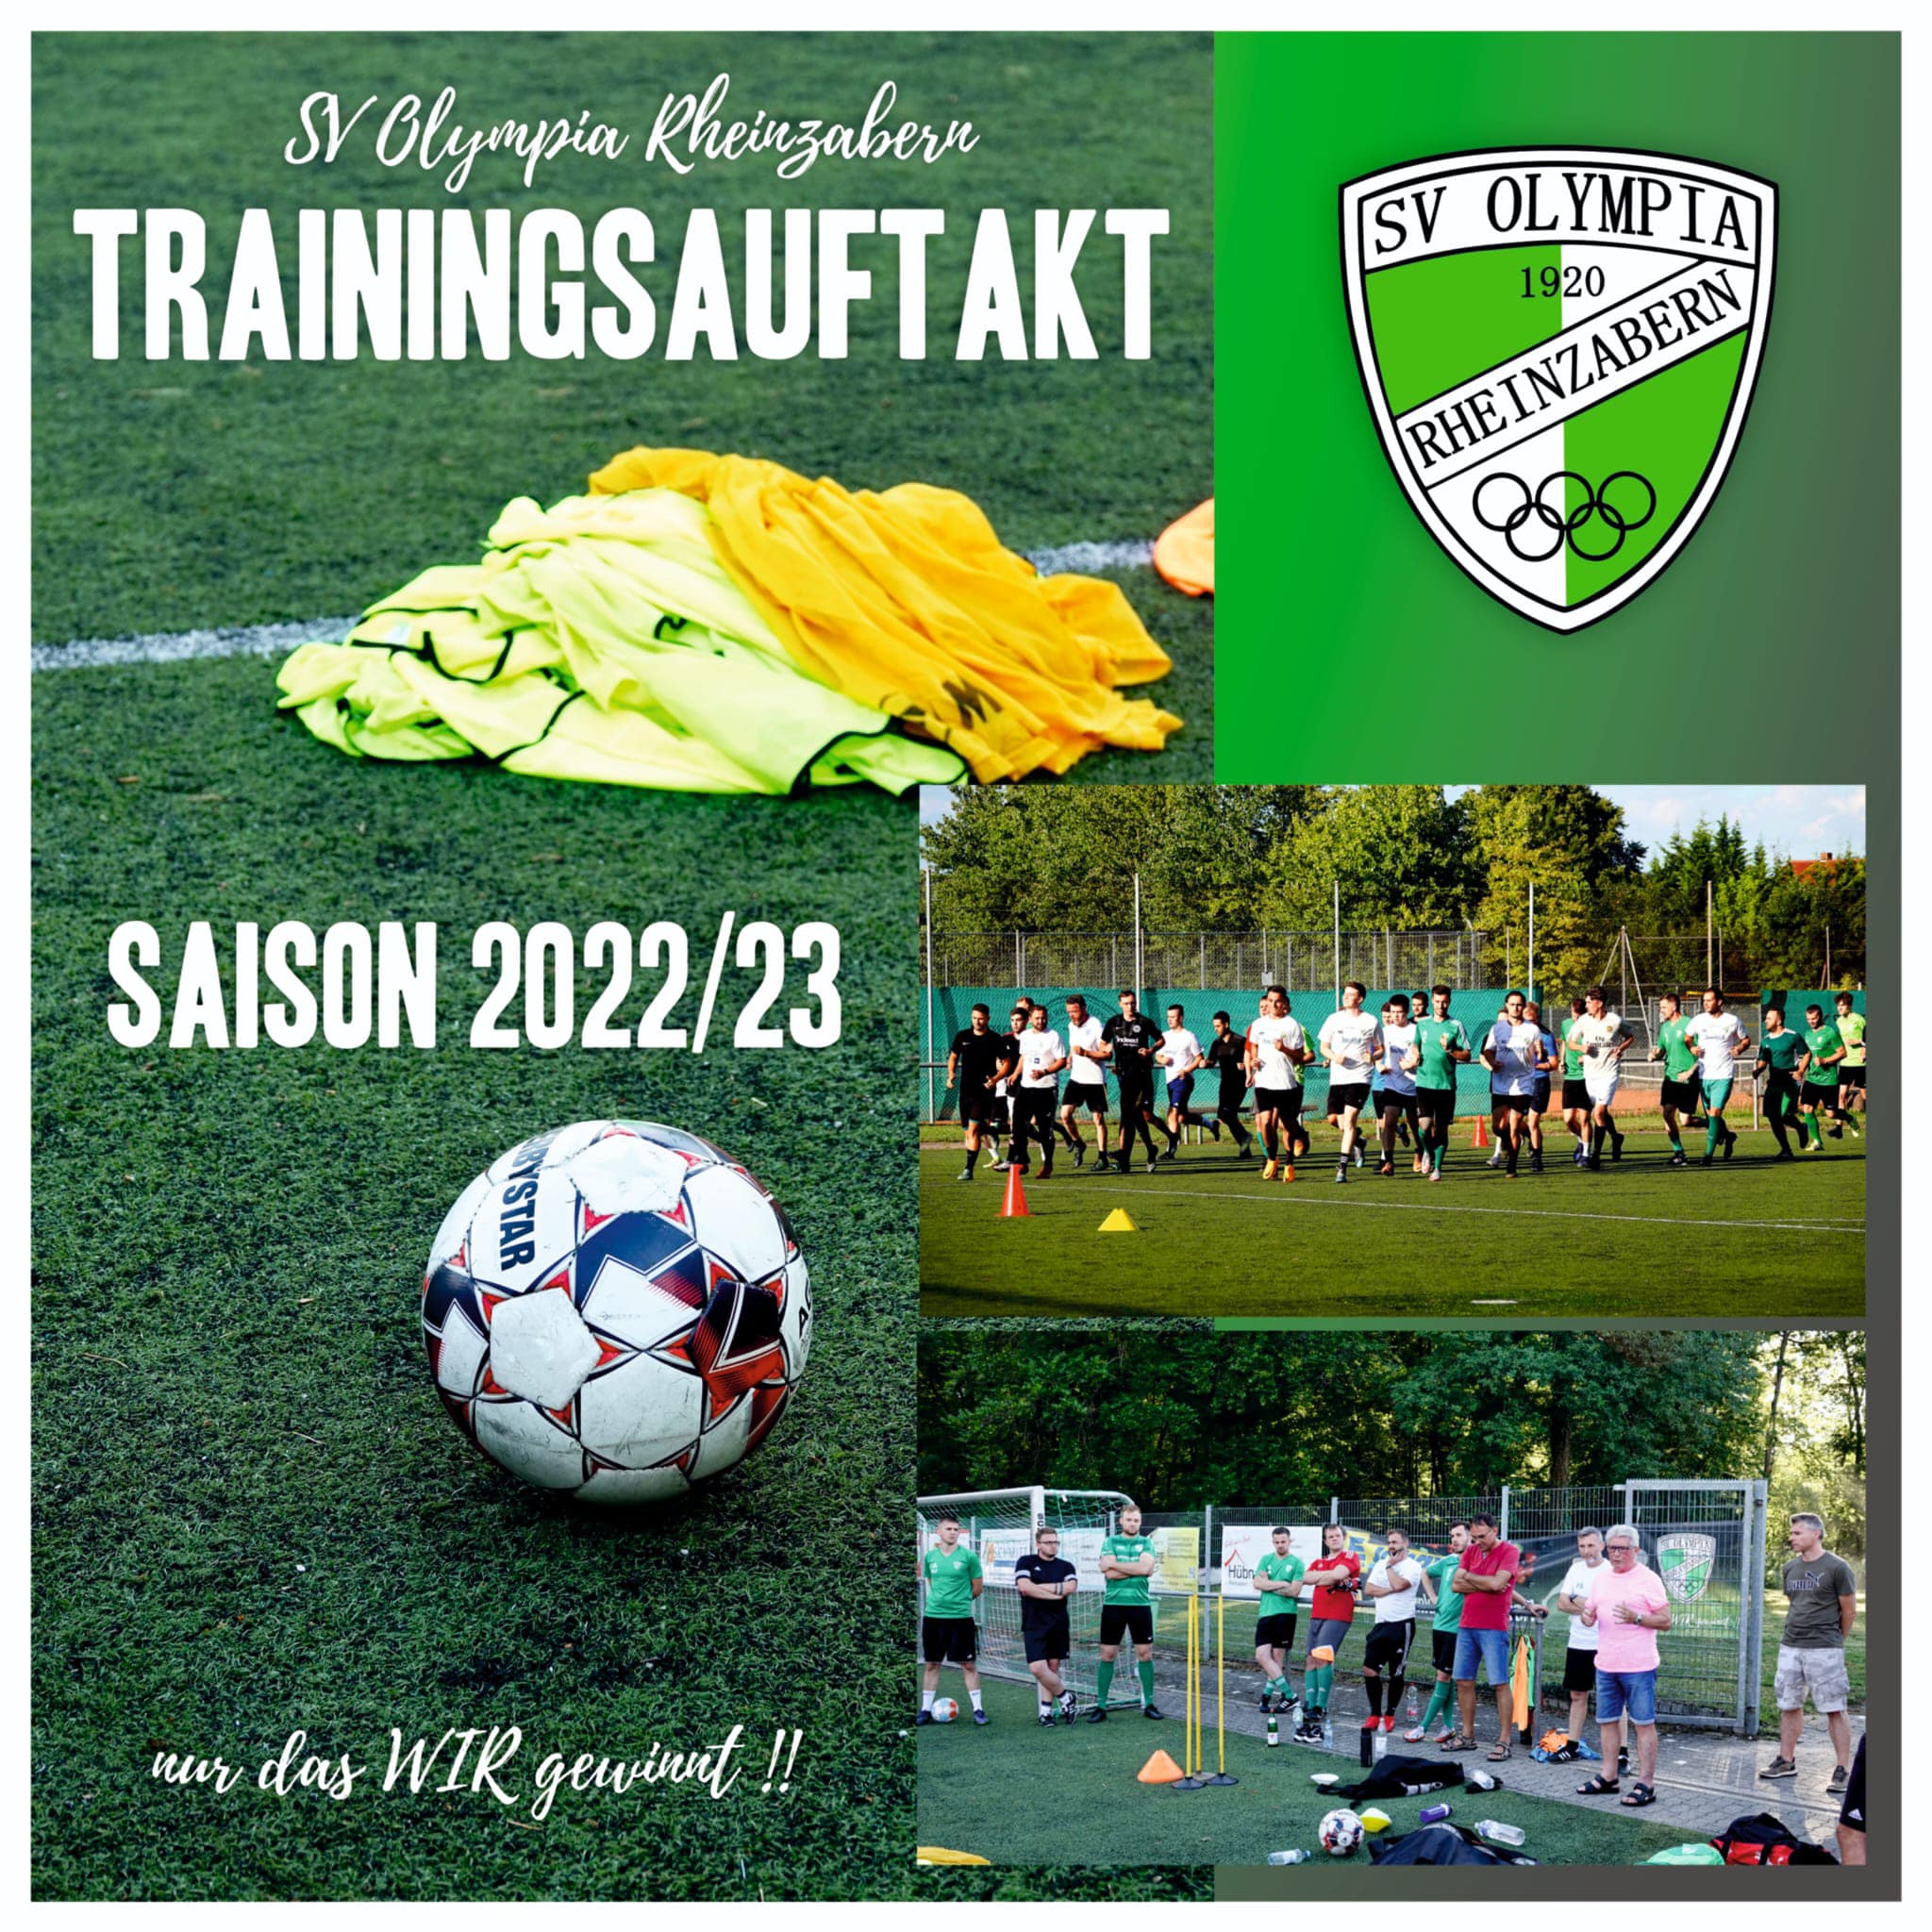 Trainingsauftakt in Grün und Weiß!